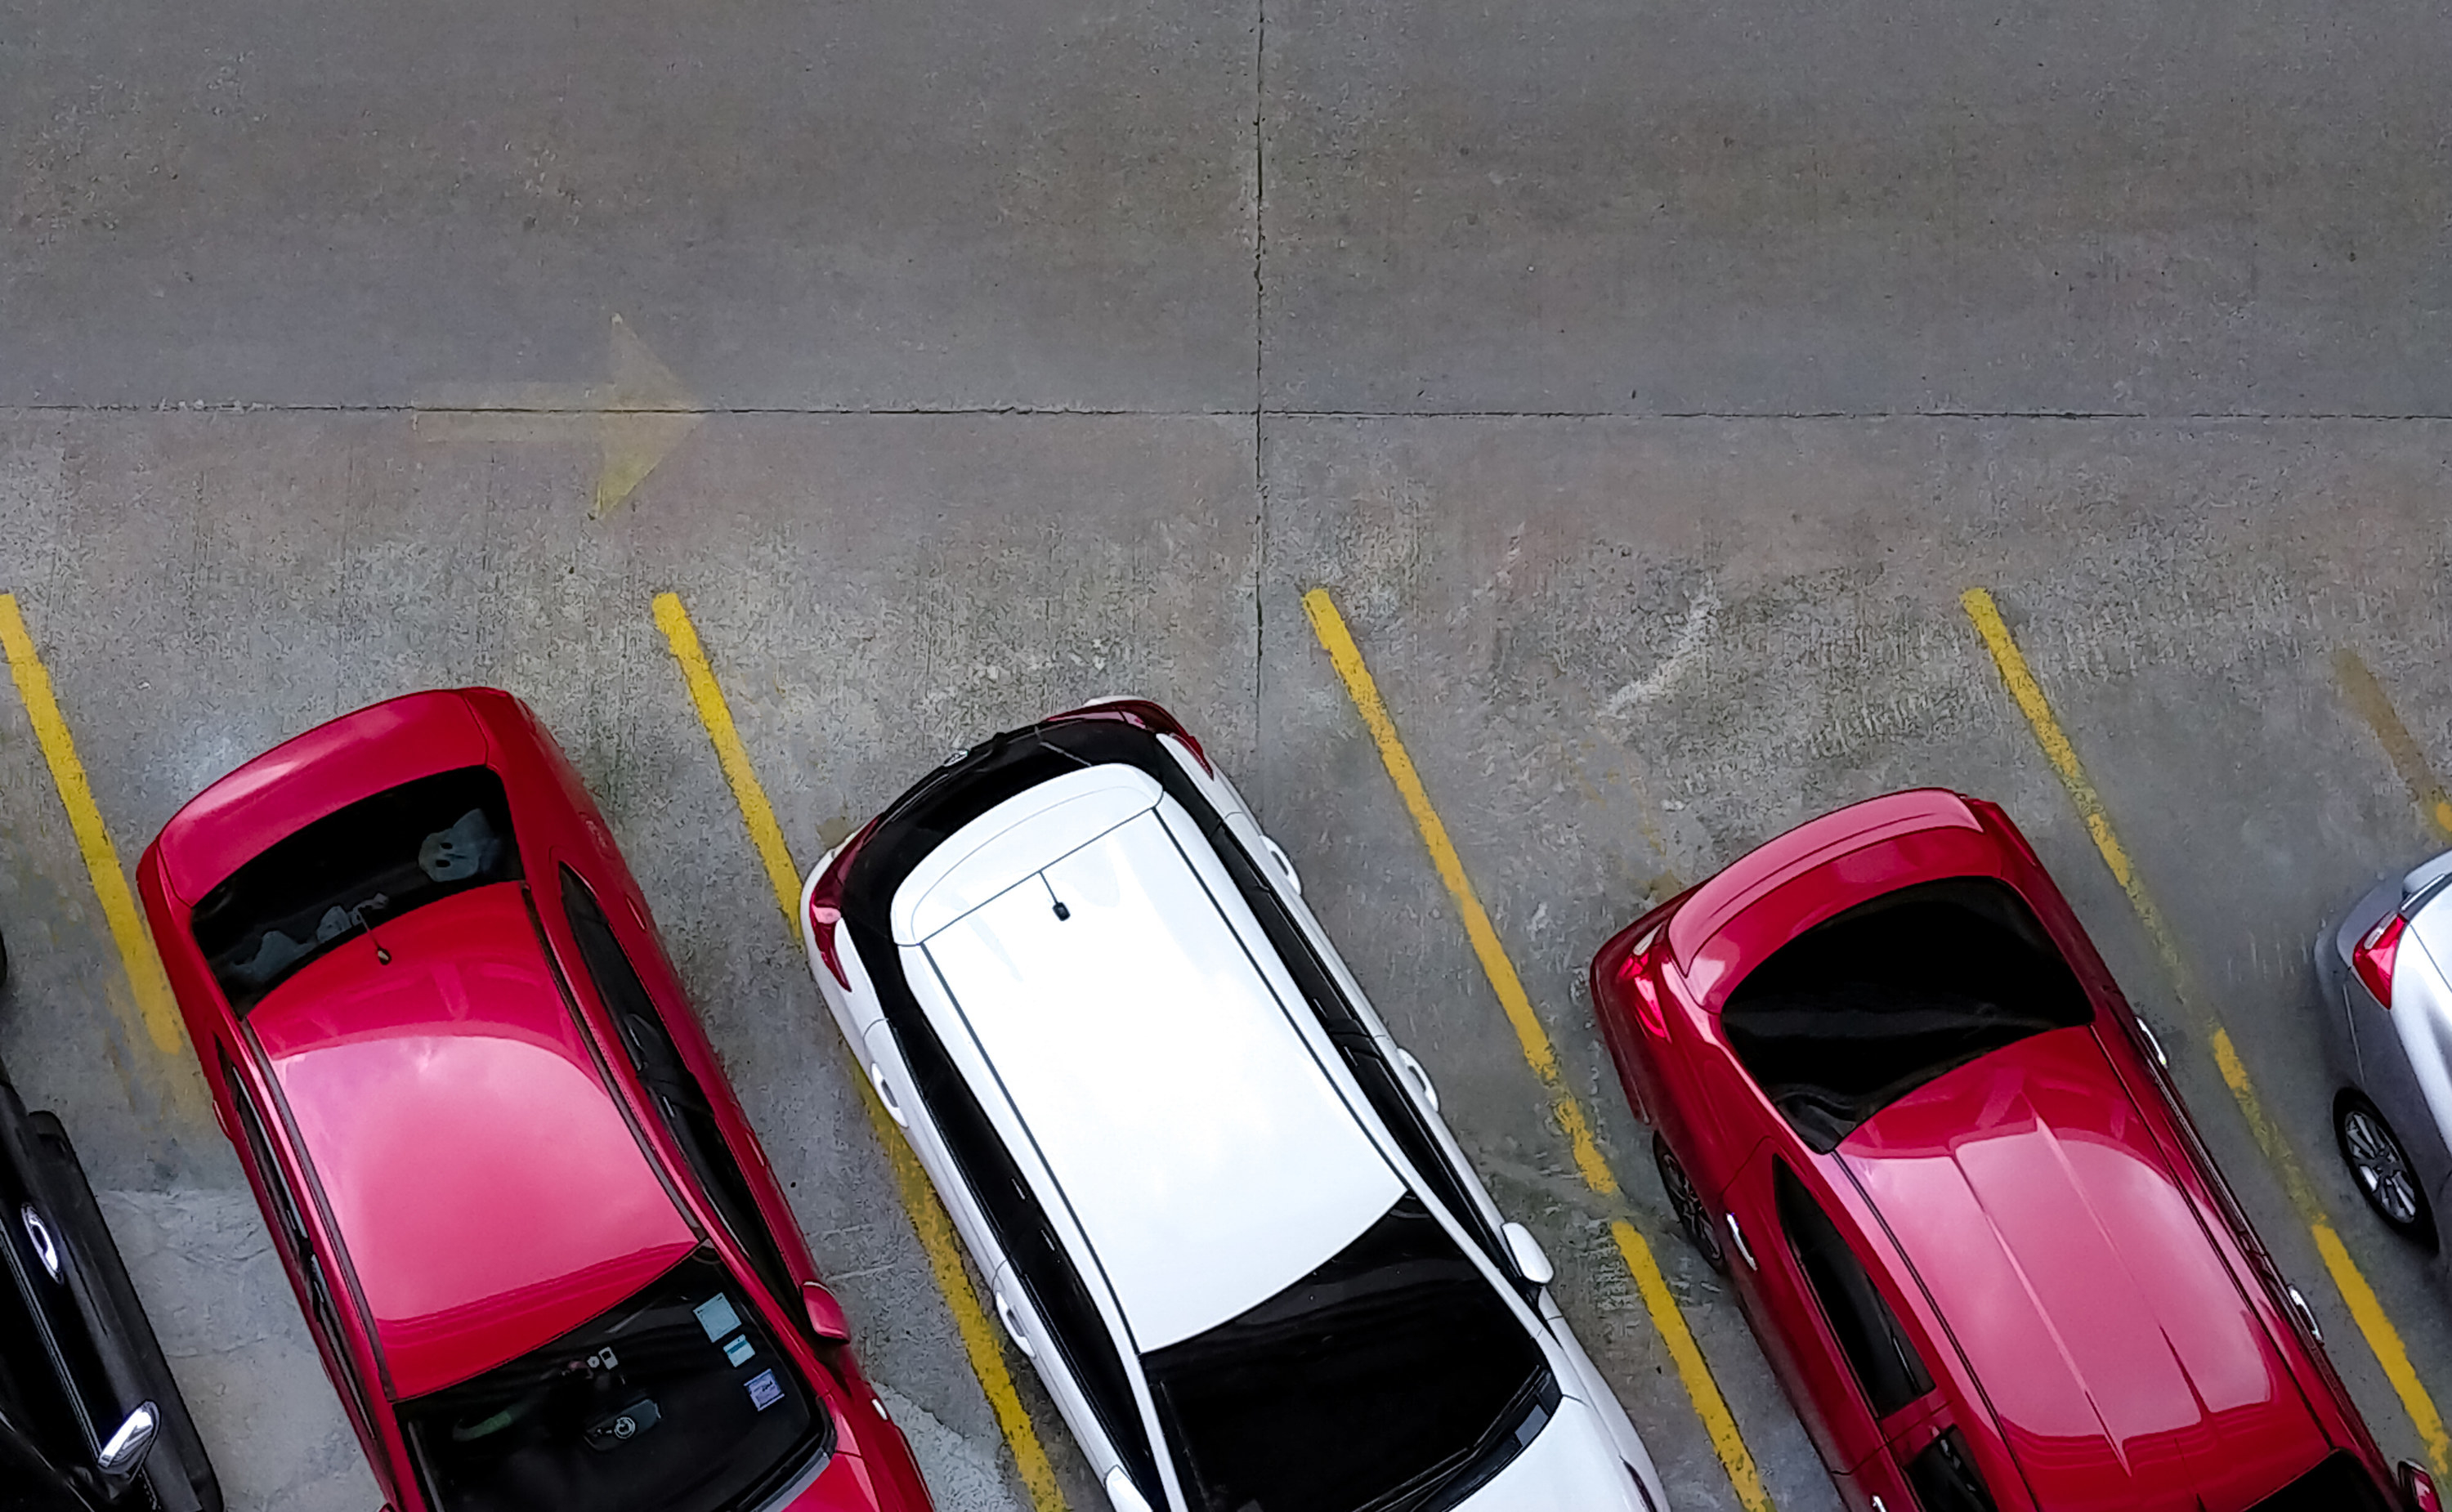 Cars in street parking spots